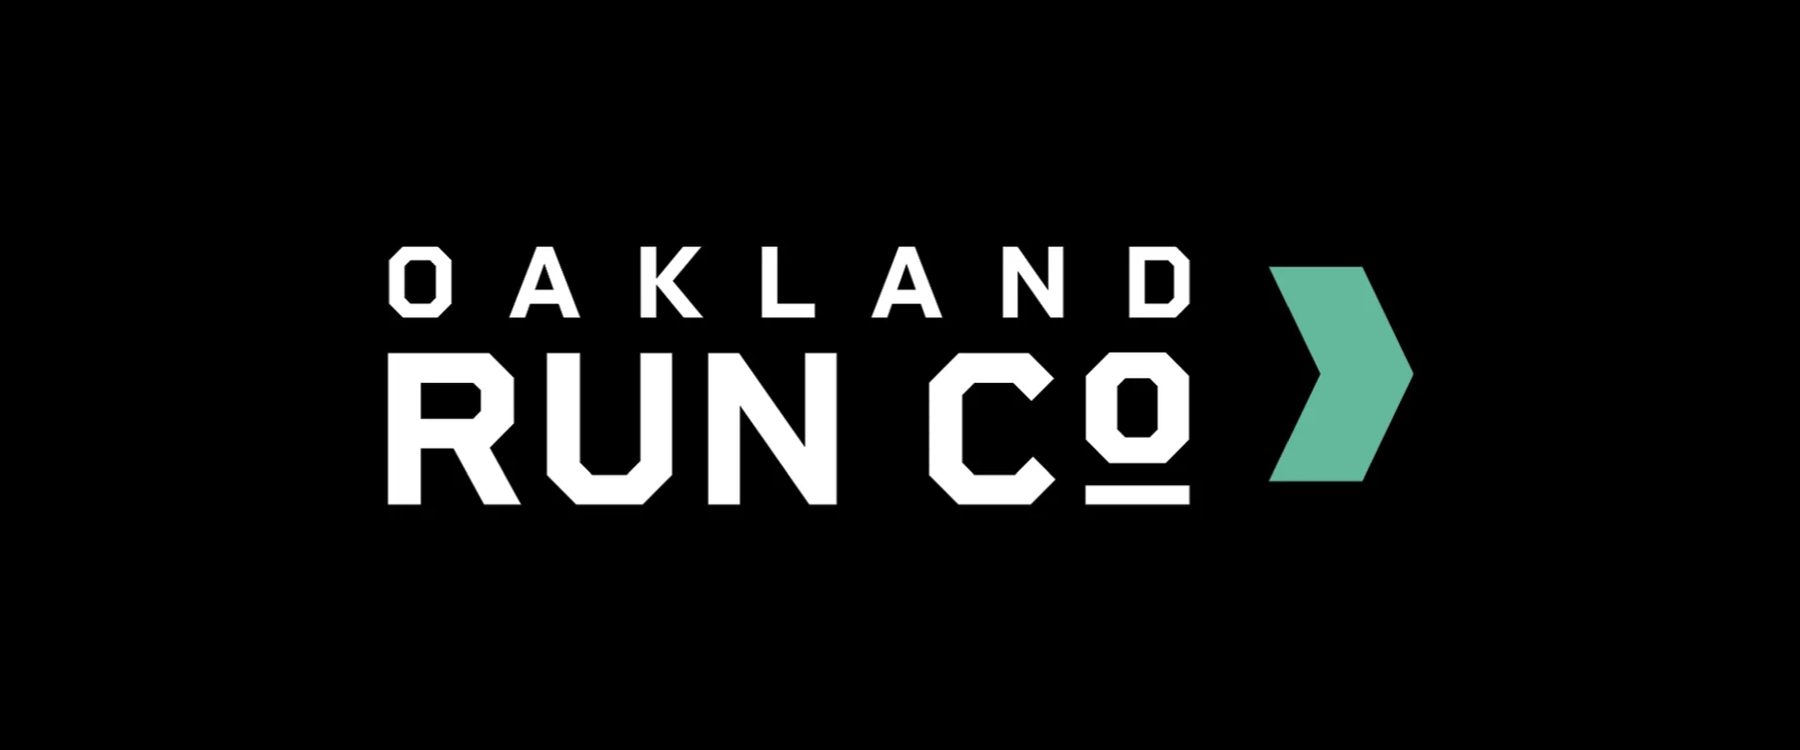 Oakland Run Co. - We Run Here Logo